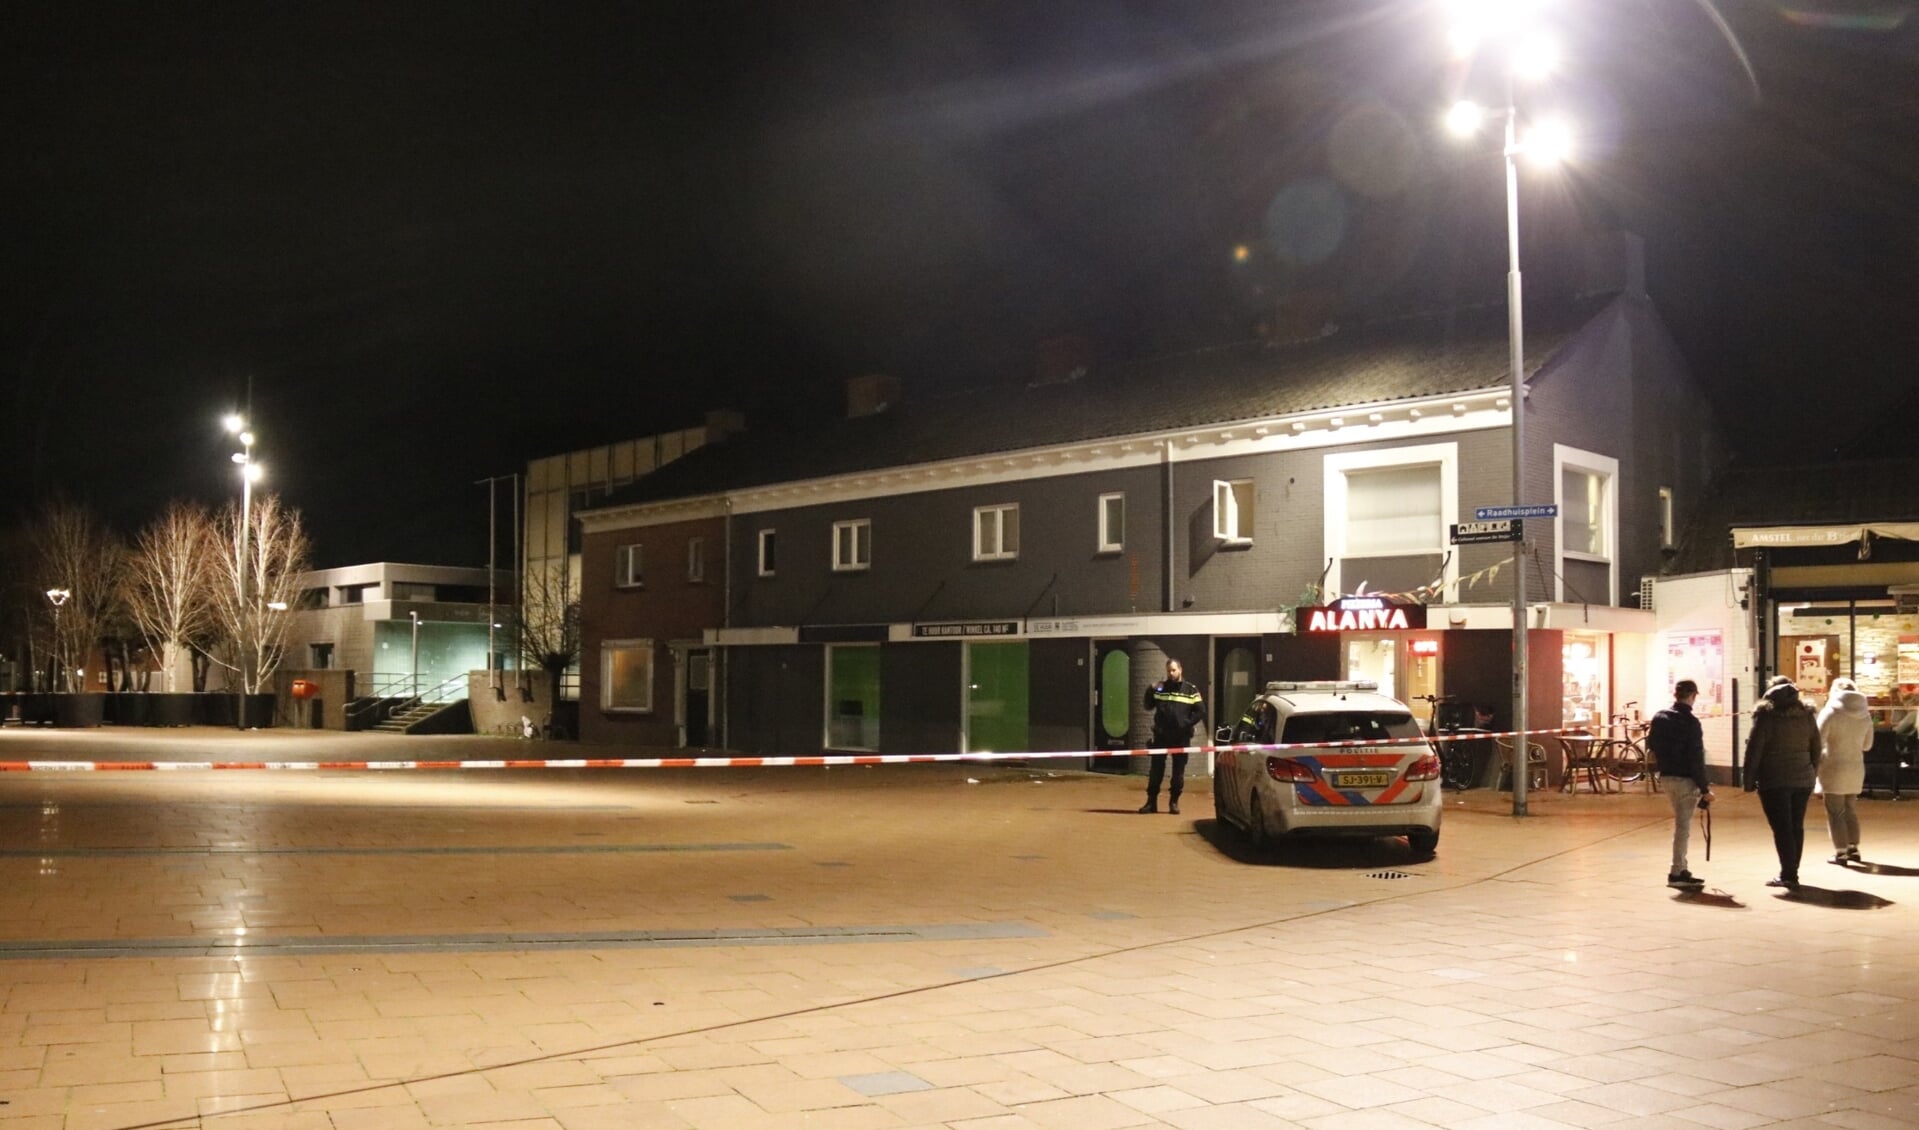 De gemeente Boxmeer hoopt dat door cameratoezicht het aantal (gewelds)incidenten en overlast in het centrum afneemt.